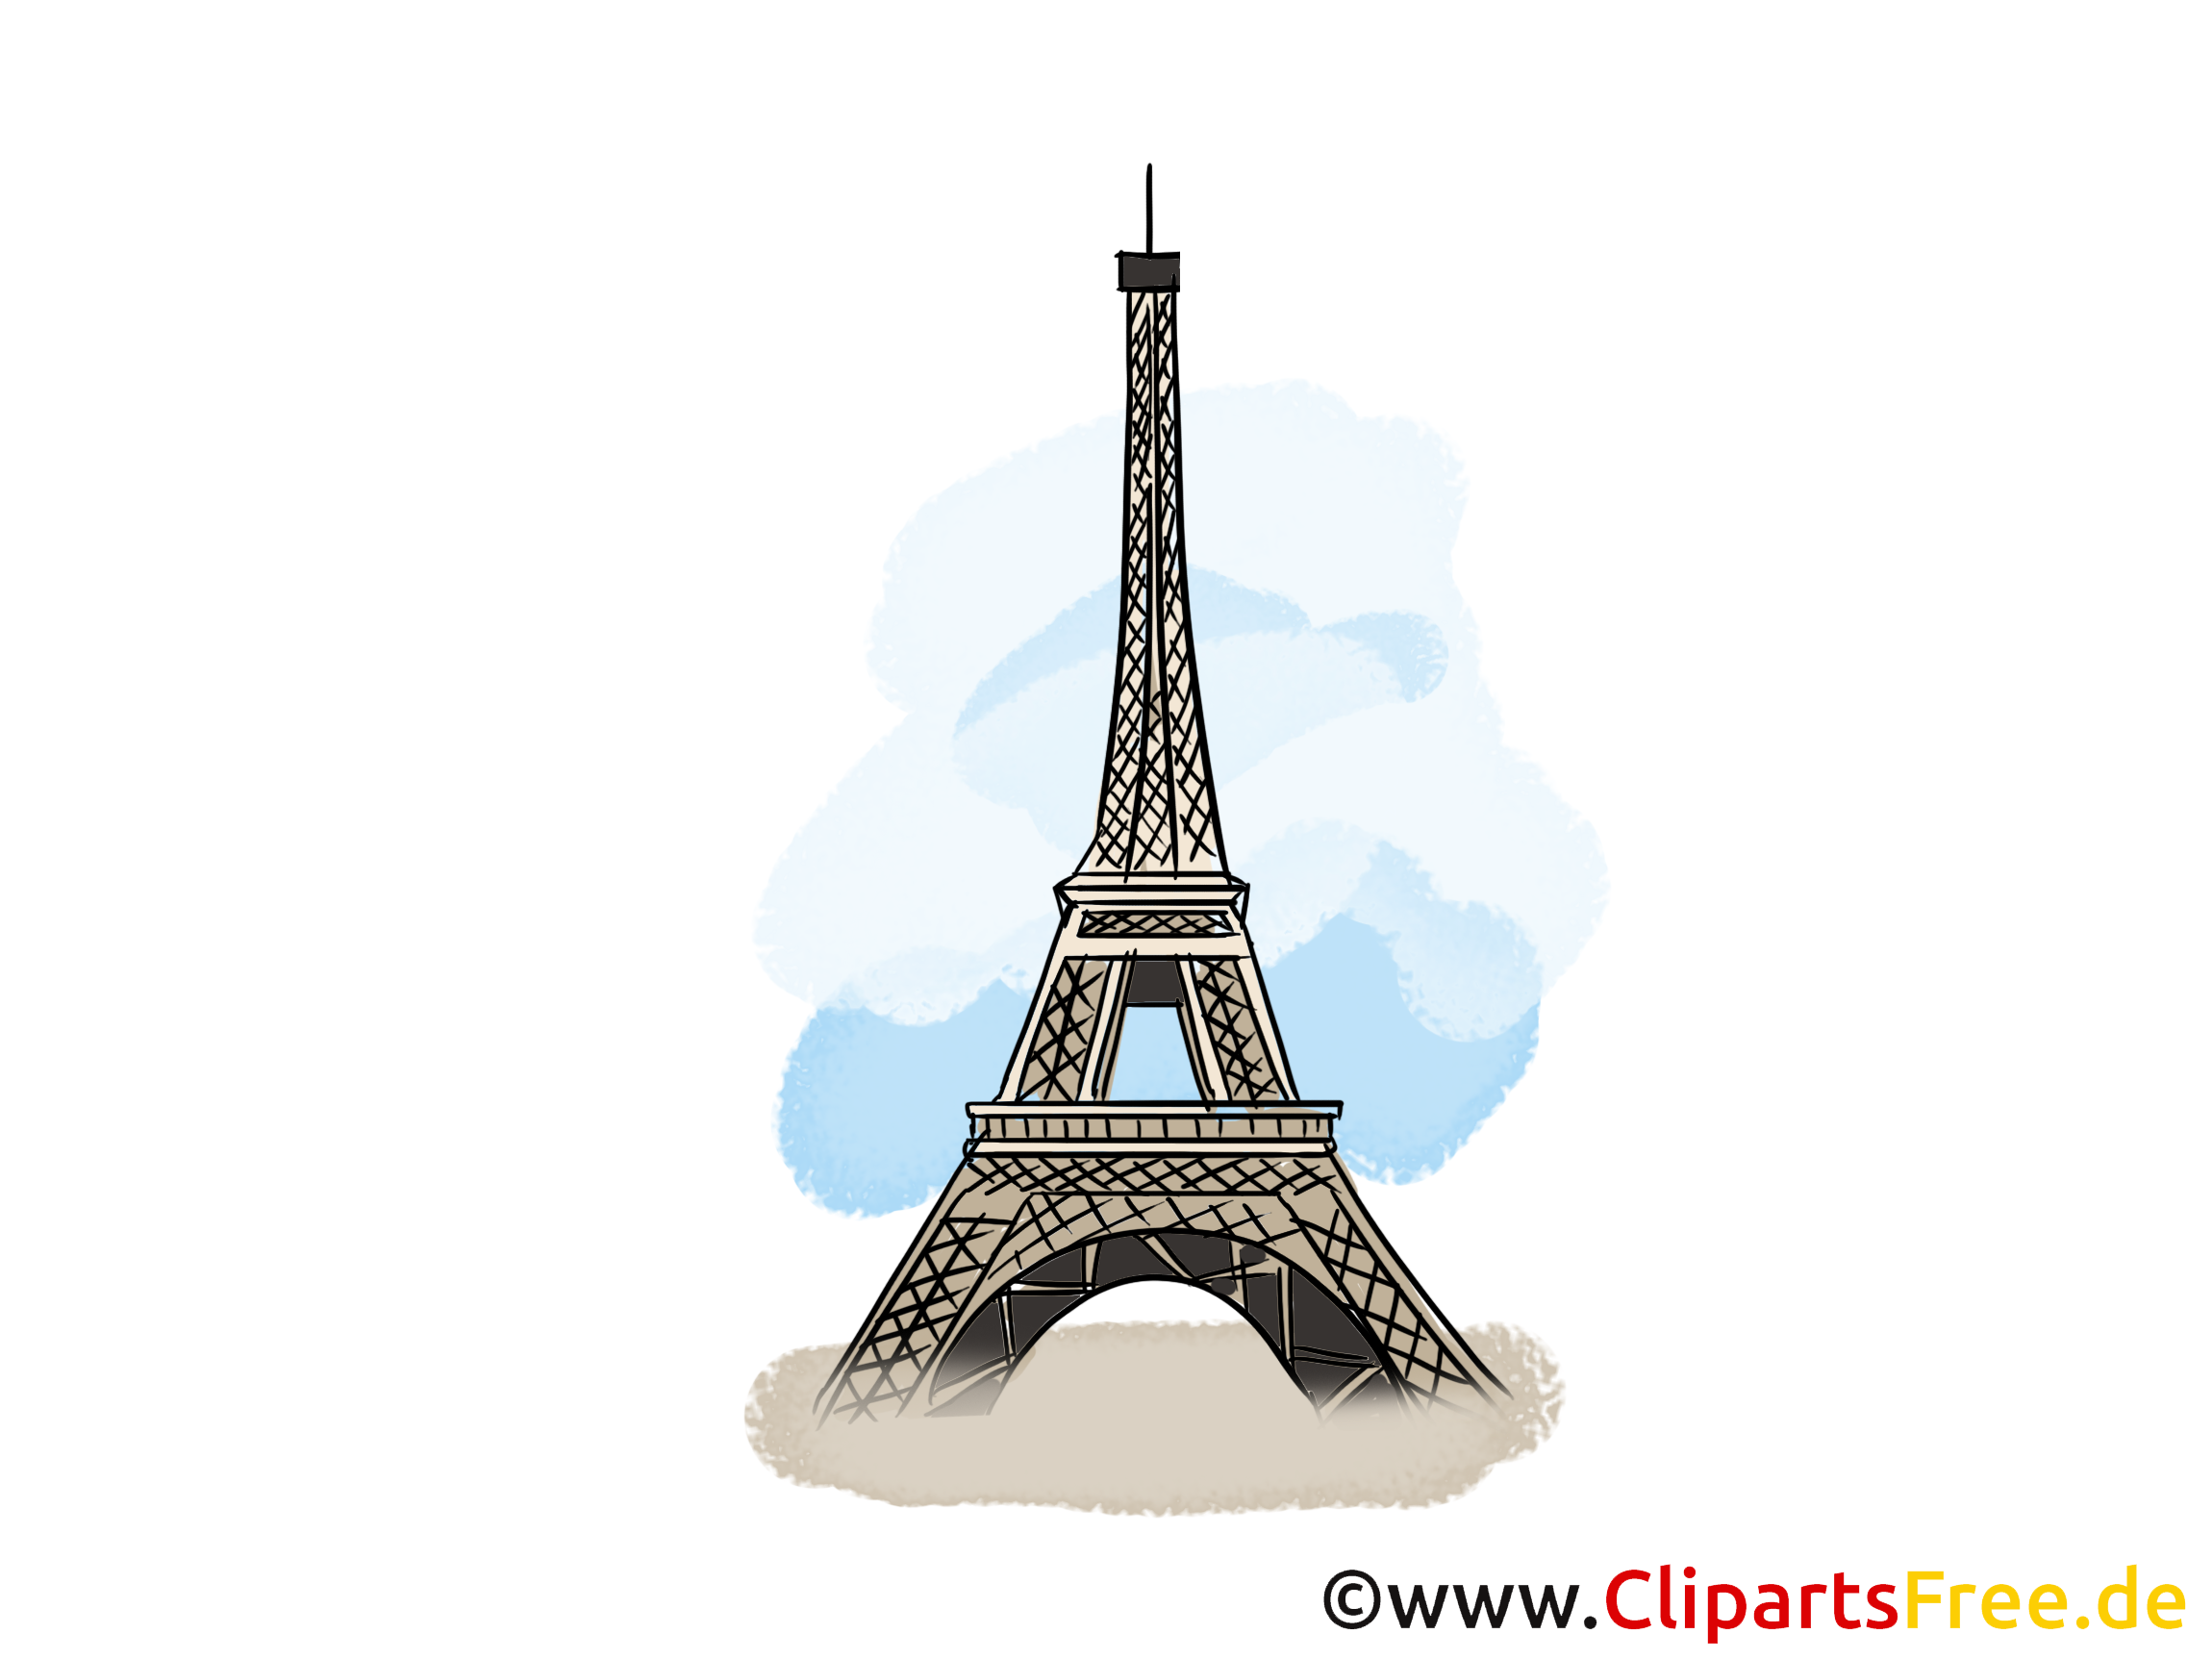 Clipart Tour Eiffel 3 - Tour Eiffel, Transparent background PNG HD thumbnail